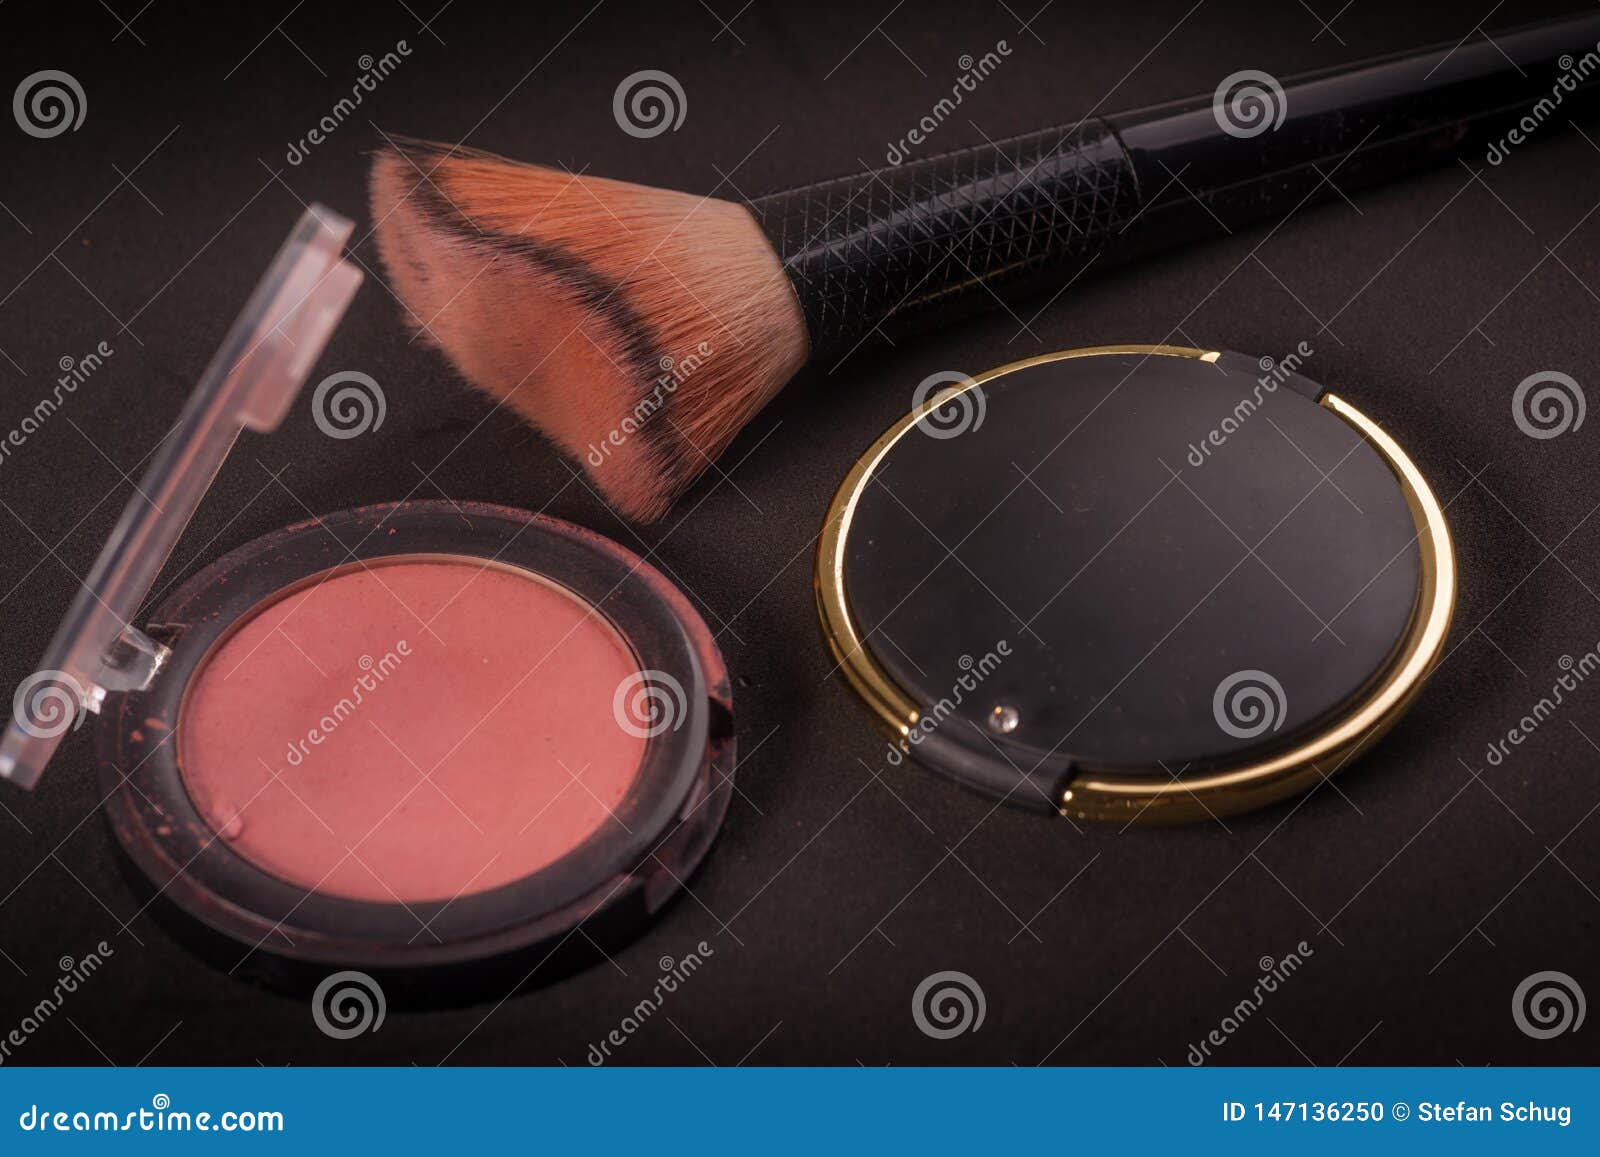 Escove, core e espelhe - o material fêmea da beleza. Uma escova da composição retratada com espelho e algum vermelho A imagem é composta em um contexto escuro